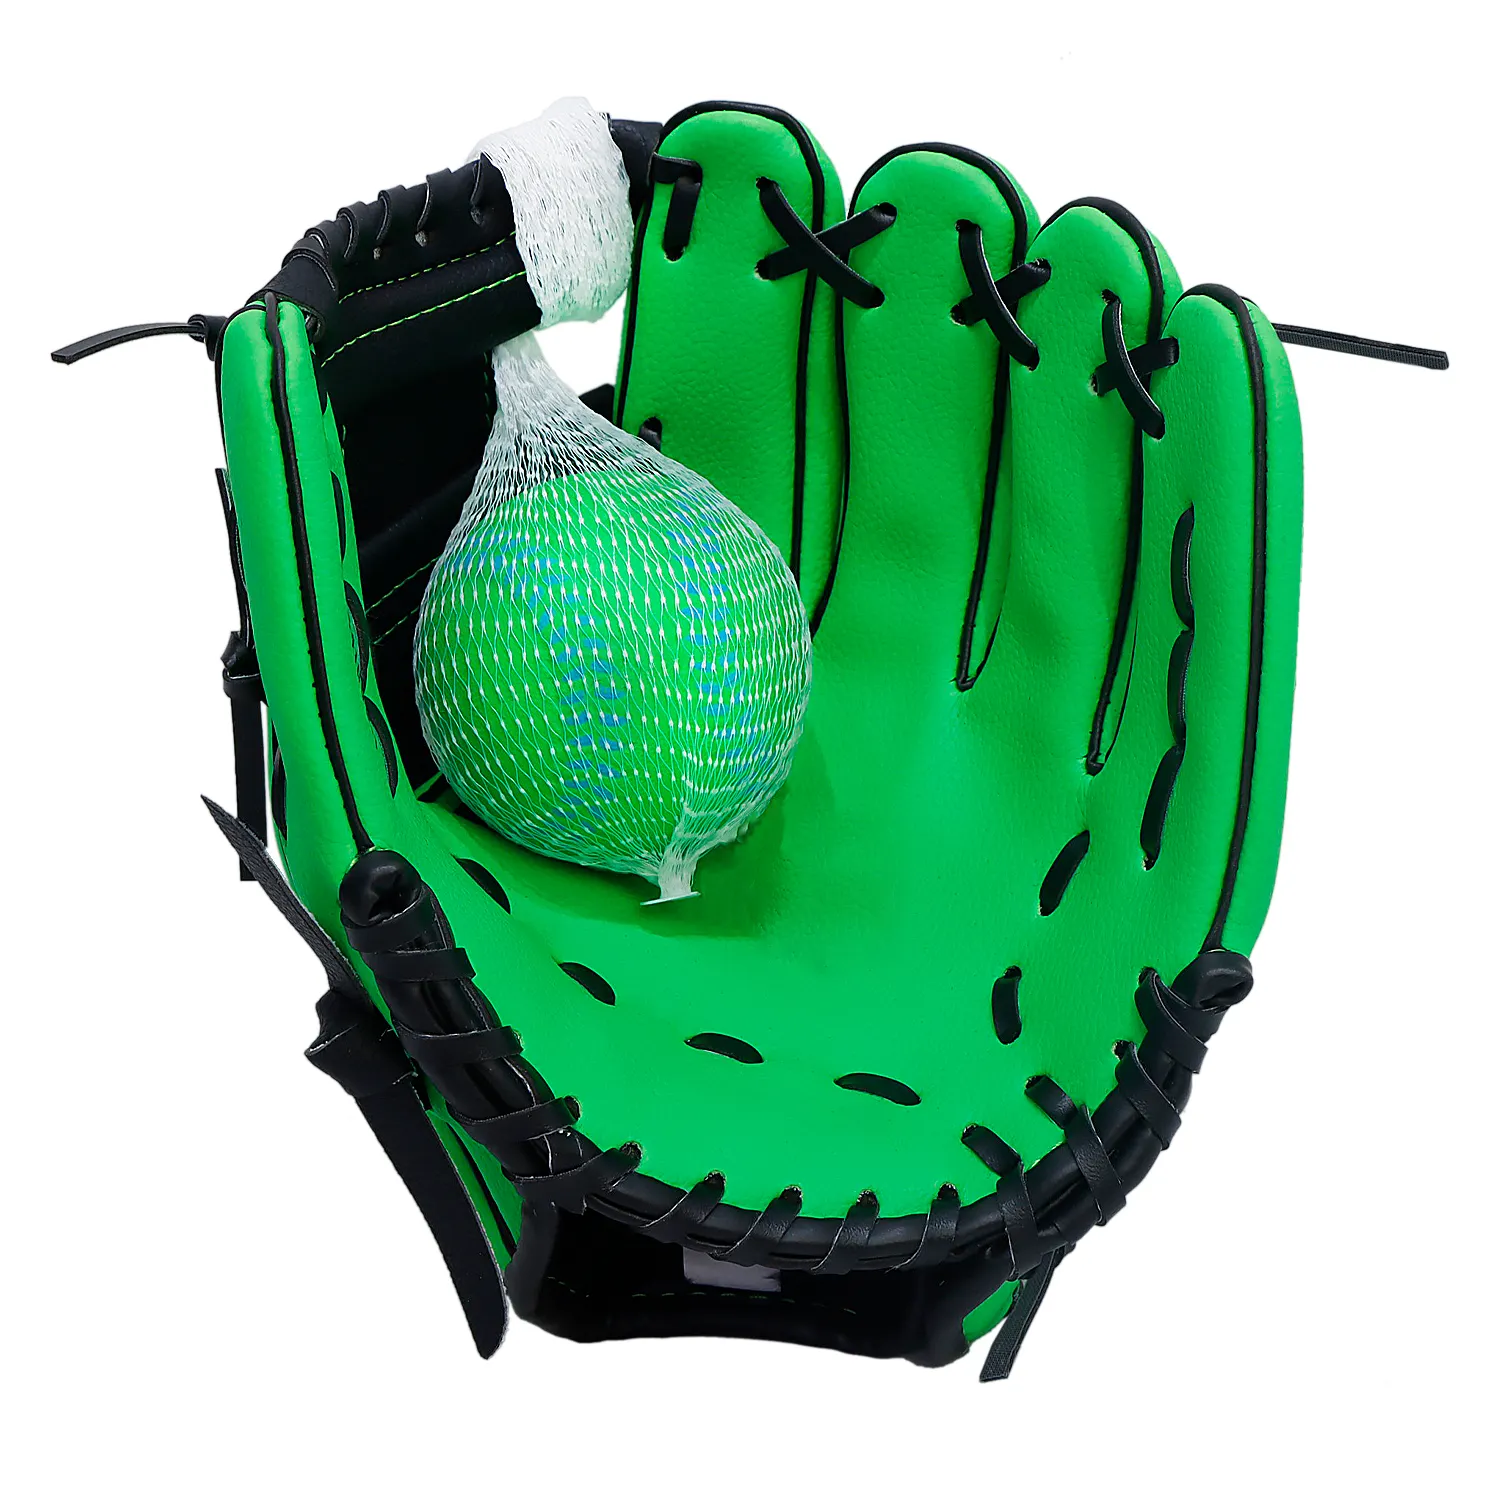 Sarung Tangan Bisbol, Sarung Tangan Bola Bisbol dengan Bola Busa untuk Permainan & Latihan Anak-anak